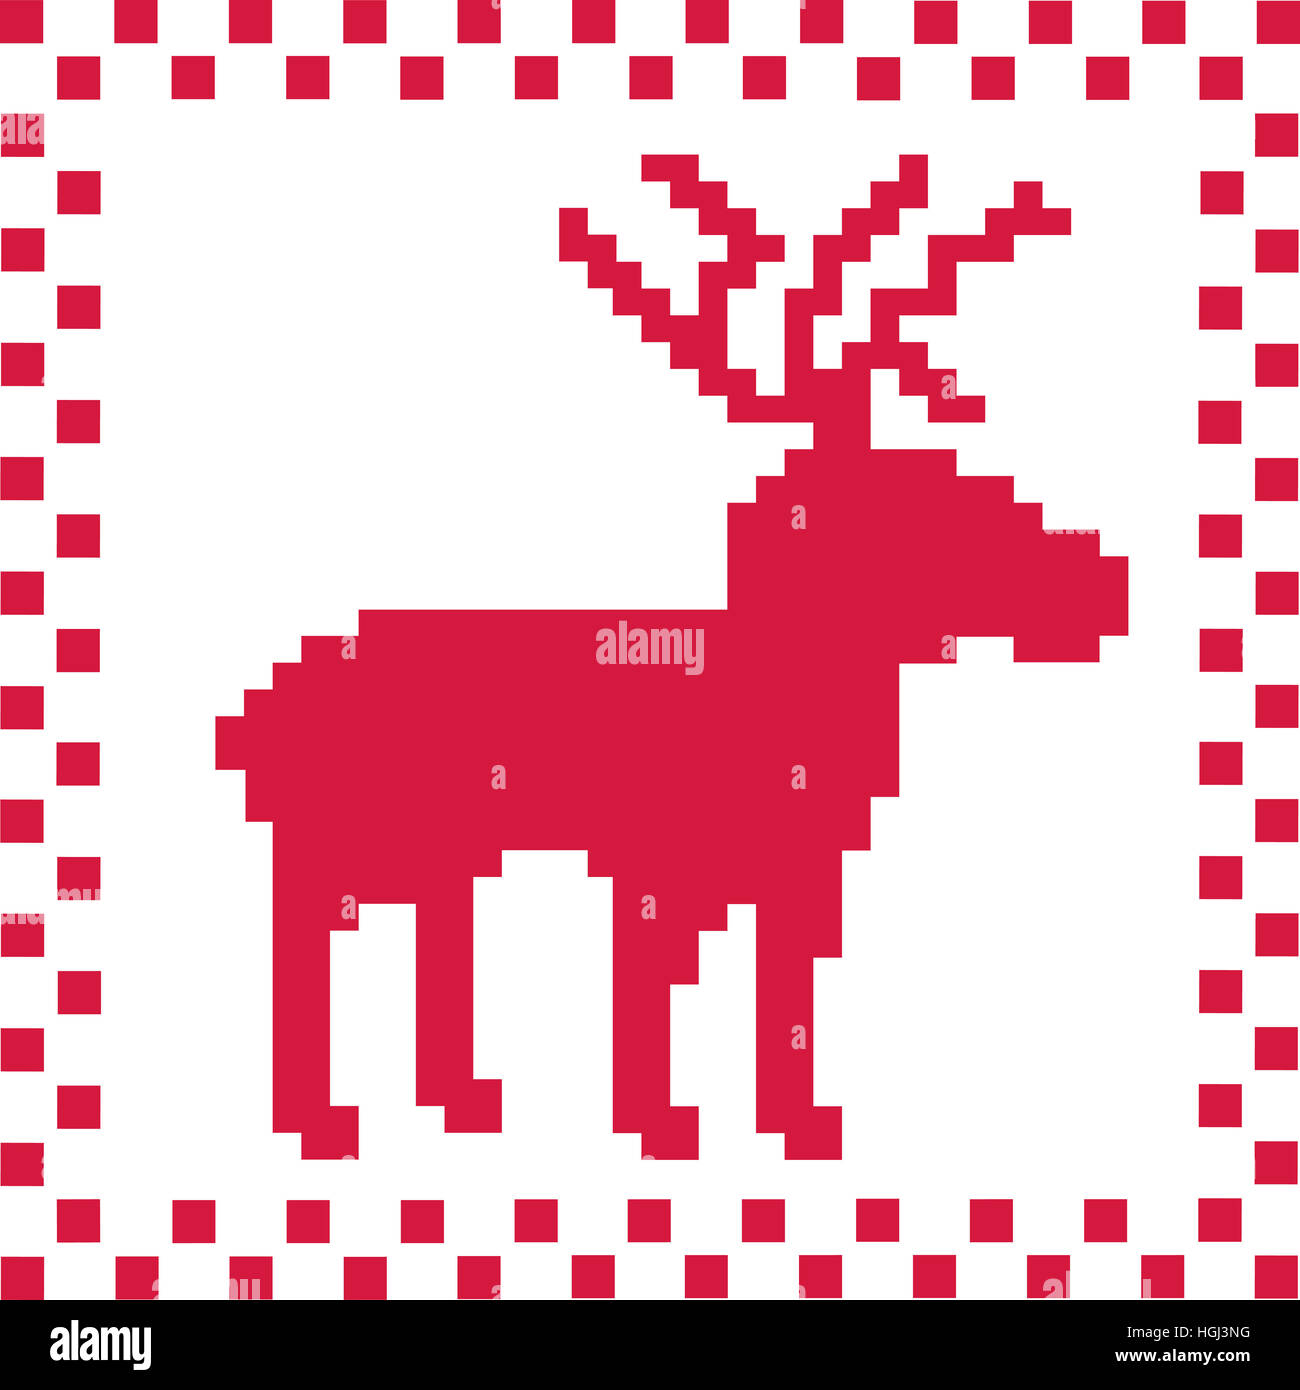 Deer with norwegian pattern texture Stock Photo